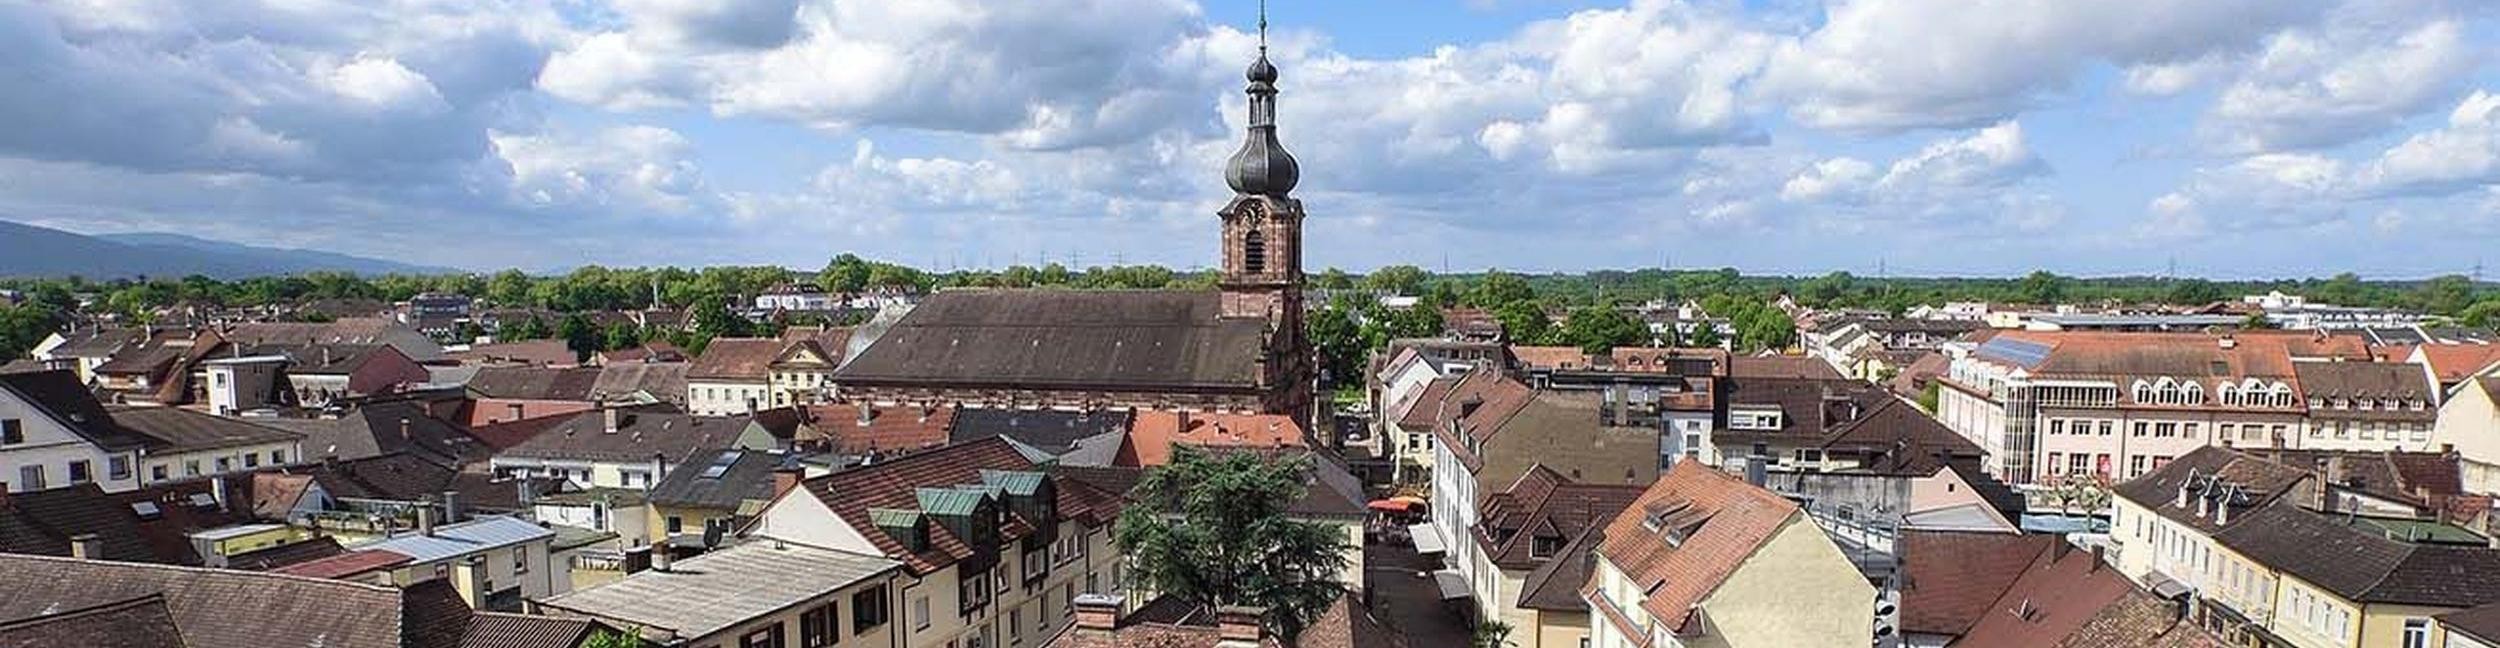 Stadtzentrum von oben mit dem Glockenturm der Kirche Saint Alexandre